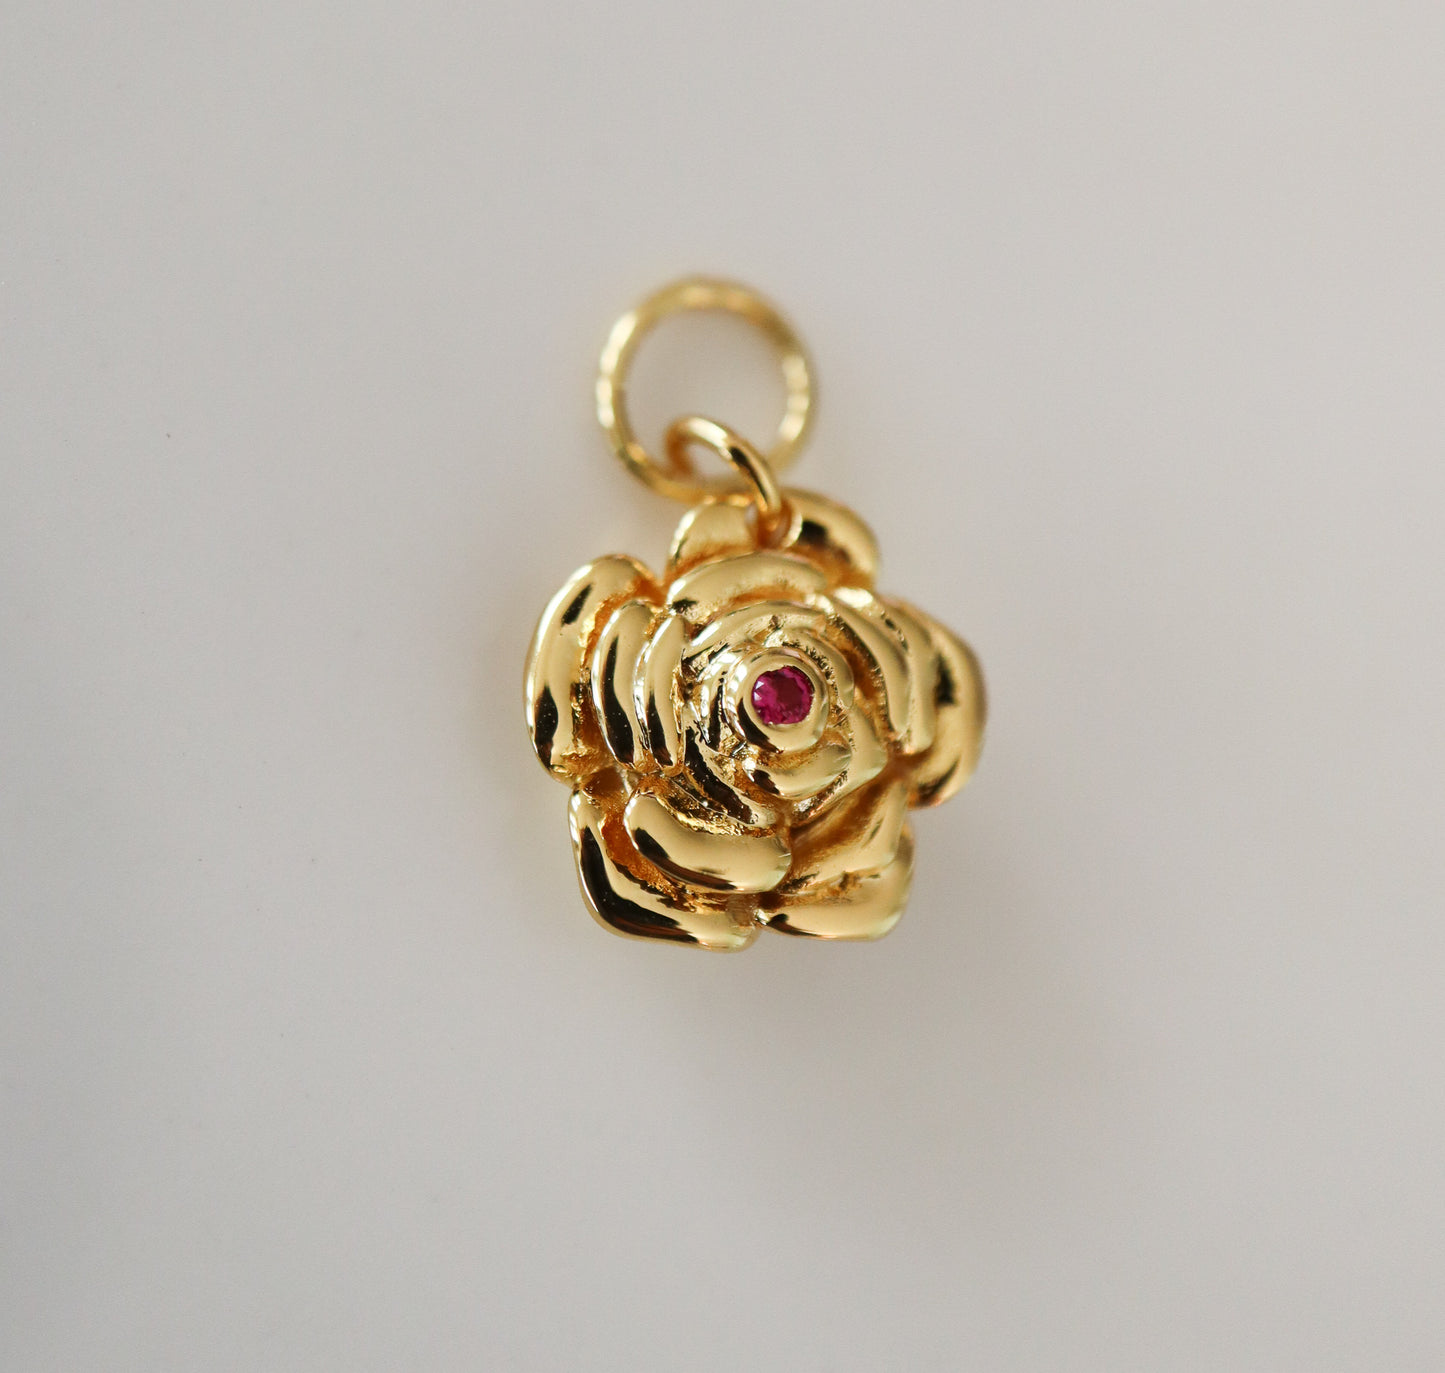 Blossom Gold Earrings